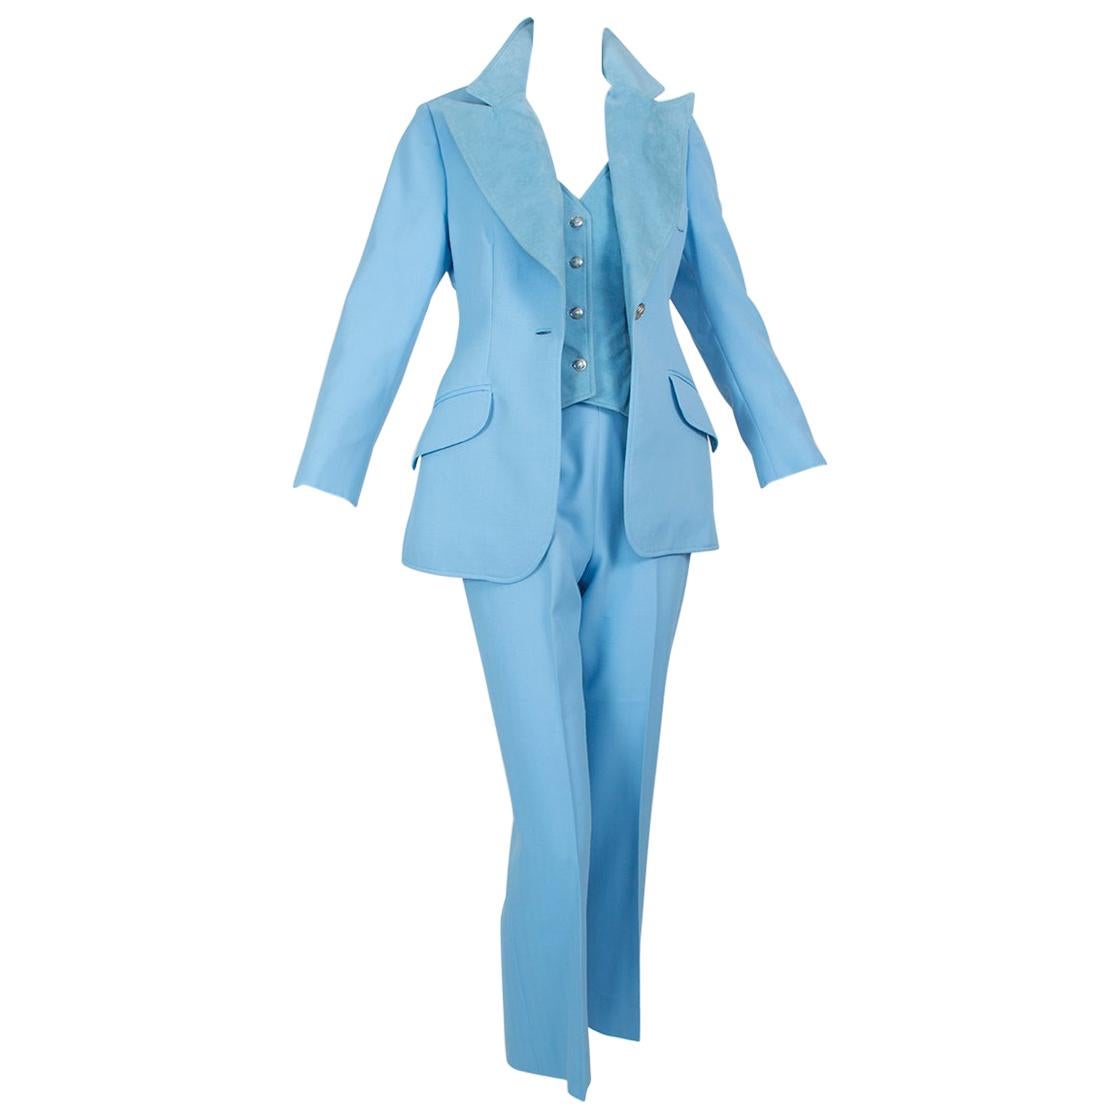 The Lilli Ann Paris Powder Blue 3-Piece Western Pant Suit - XS, 1970s